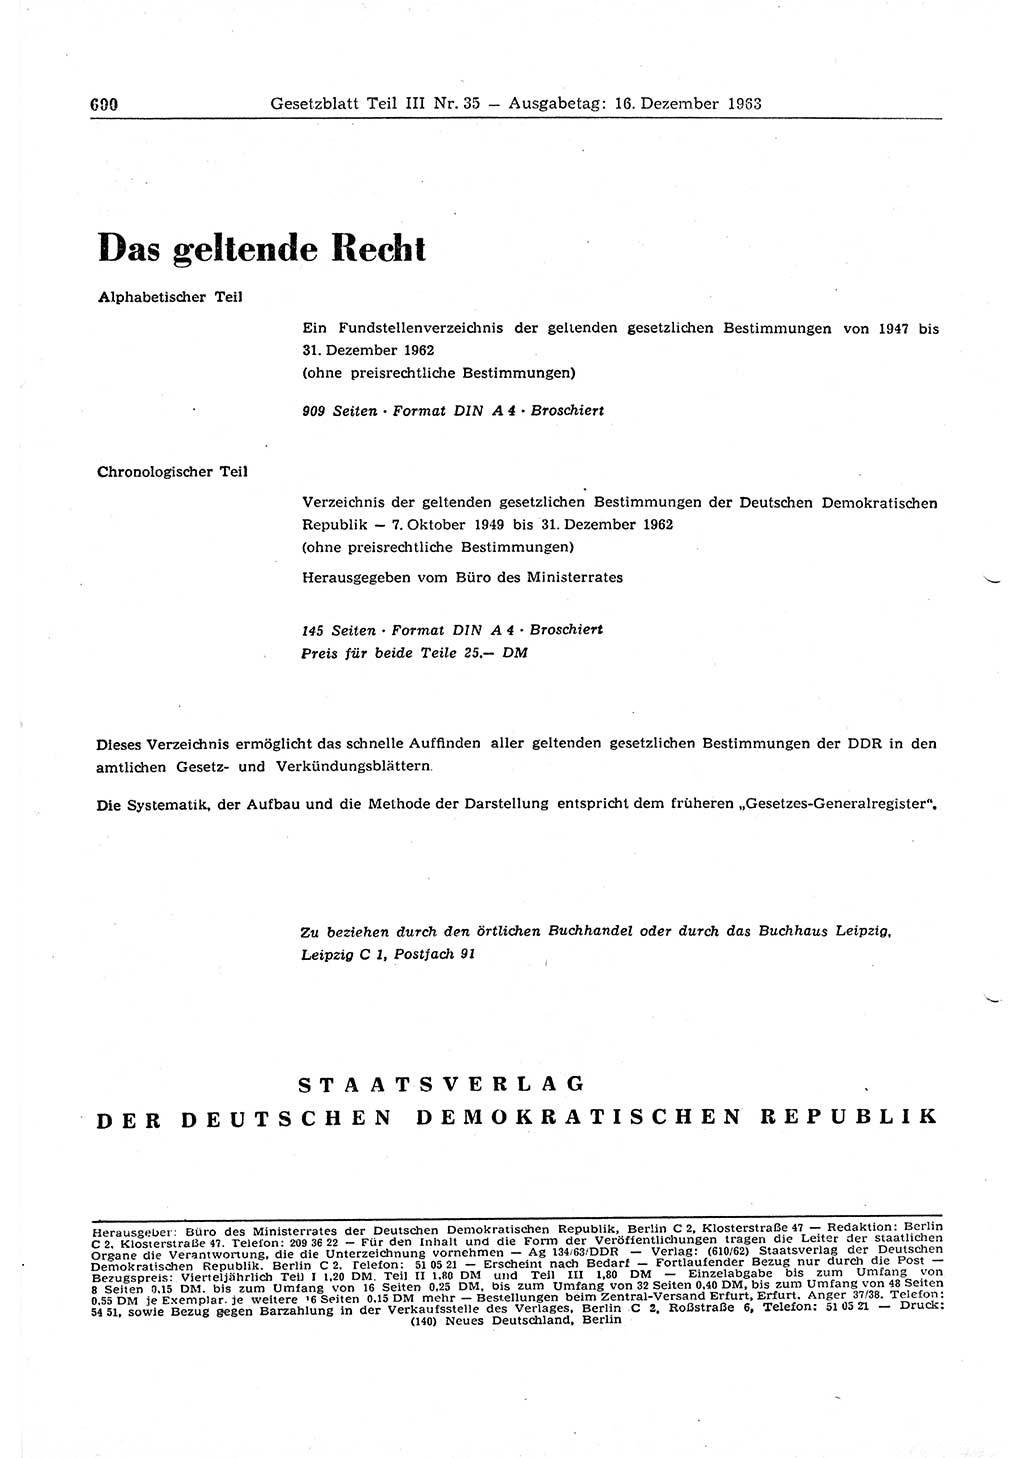 Gesetzblatt (GBl.) der Deutschen Demokratischen Republik (DDR) Teil ⅠⅠⅠ 1963, Seite 600 (GBl. DDR ⅠⅠⅠ 1963, S. 600)